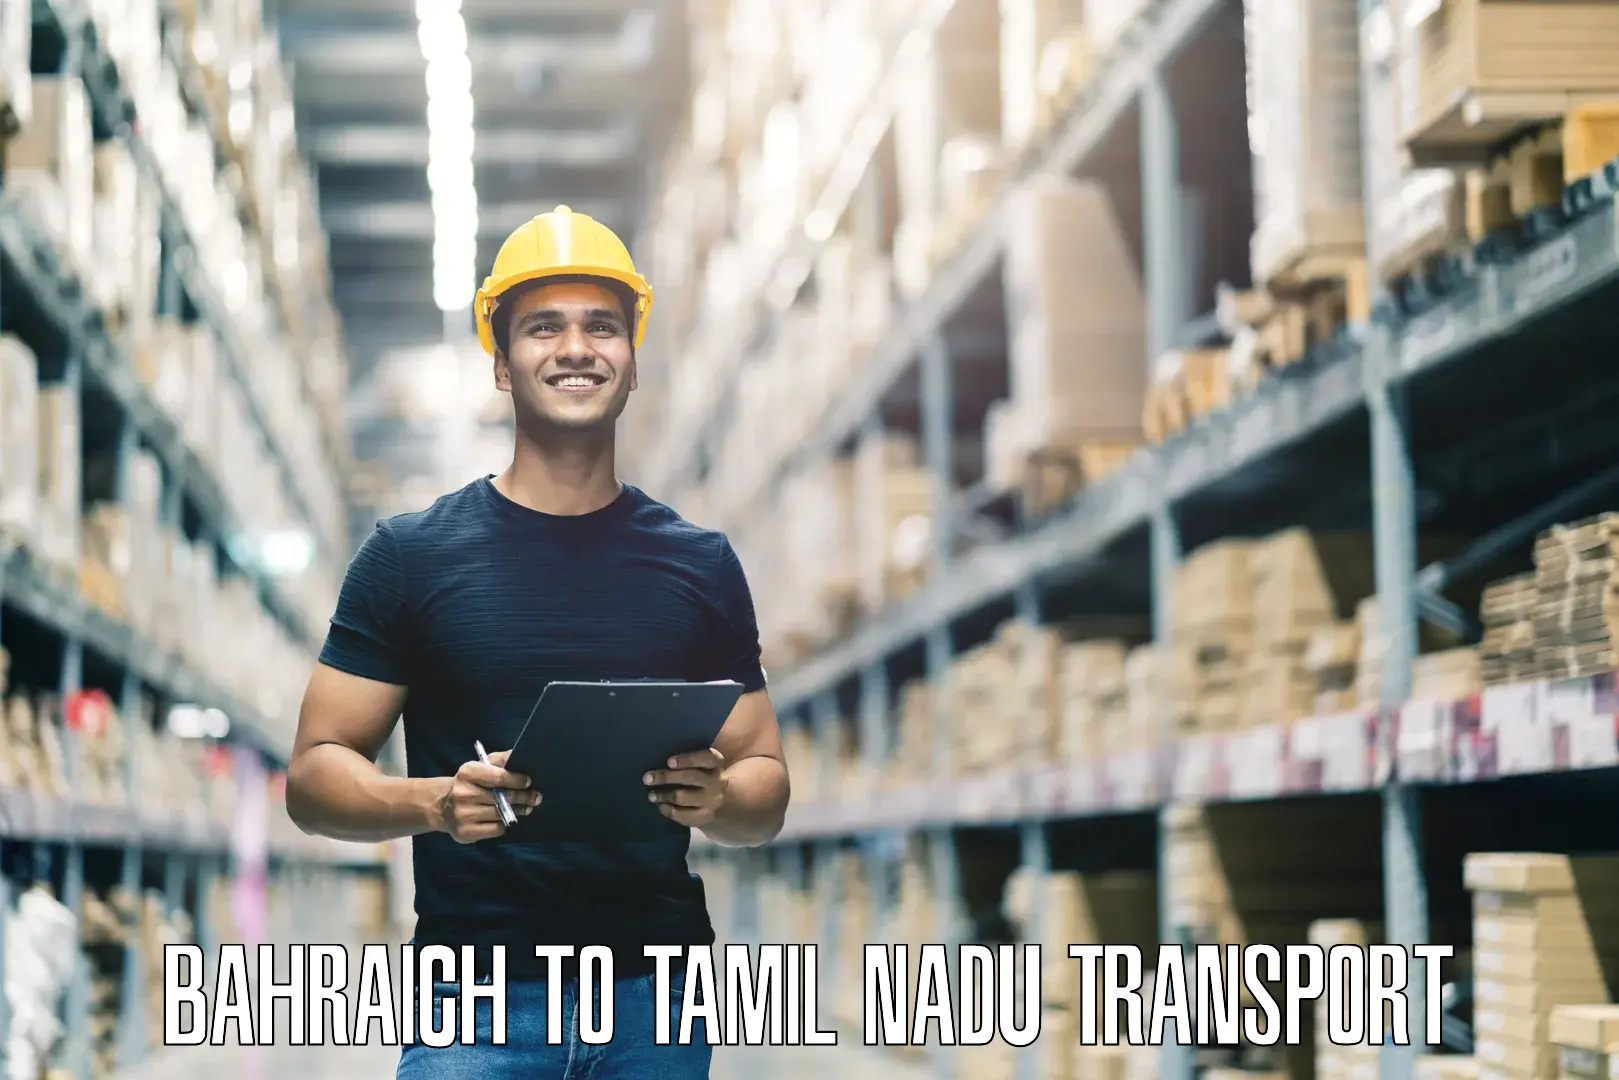 Road transport services Bahraich to Chennai